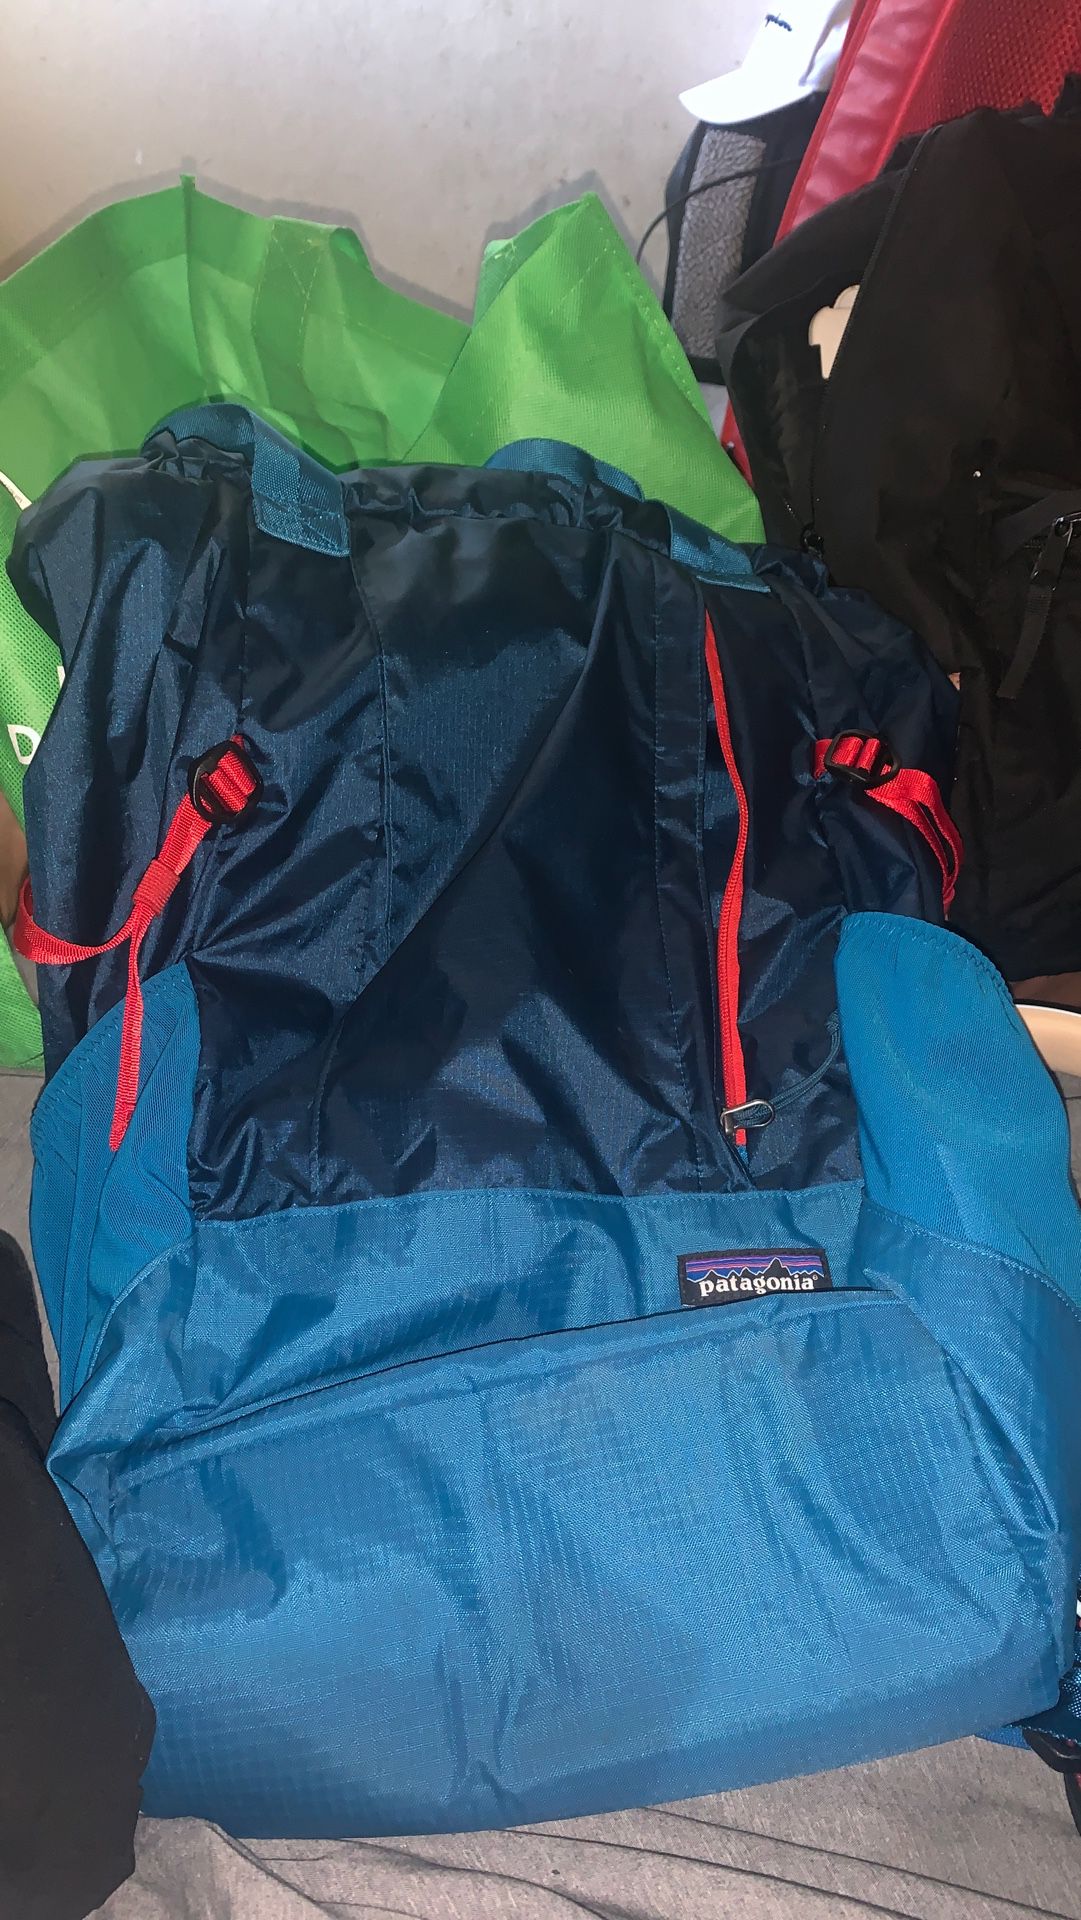 Patagonia Hiking Bag